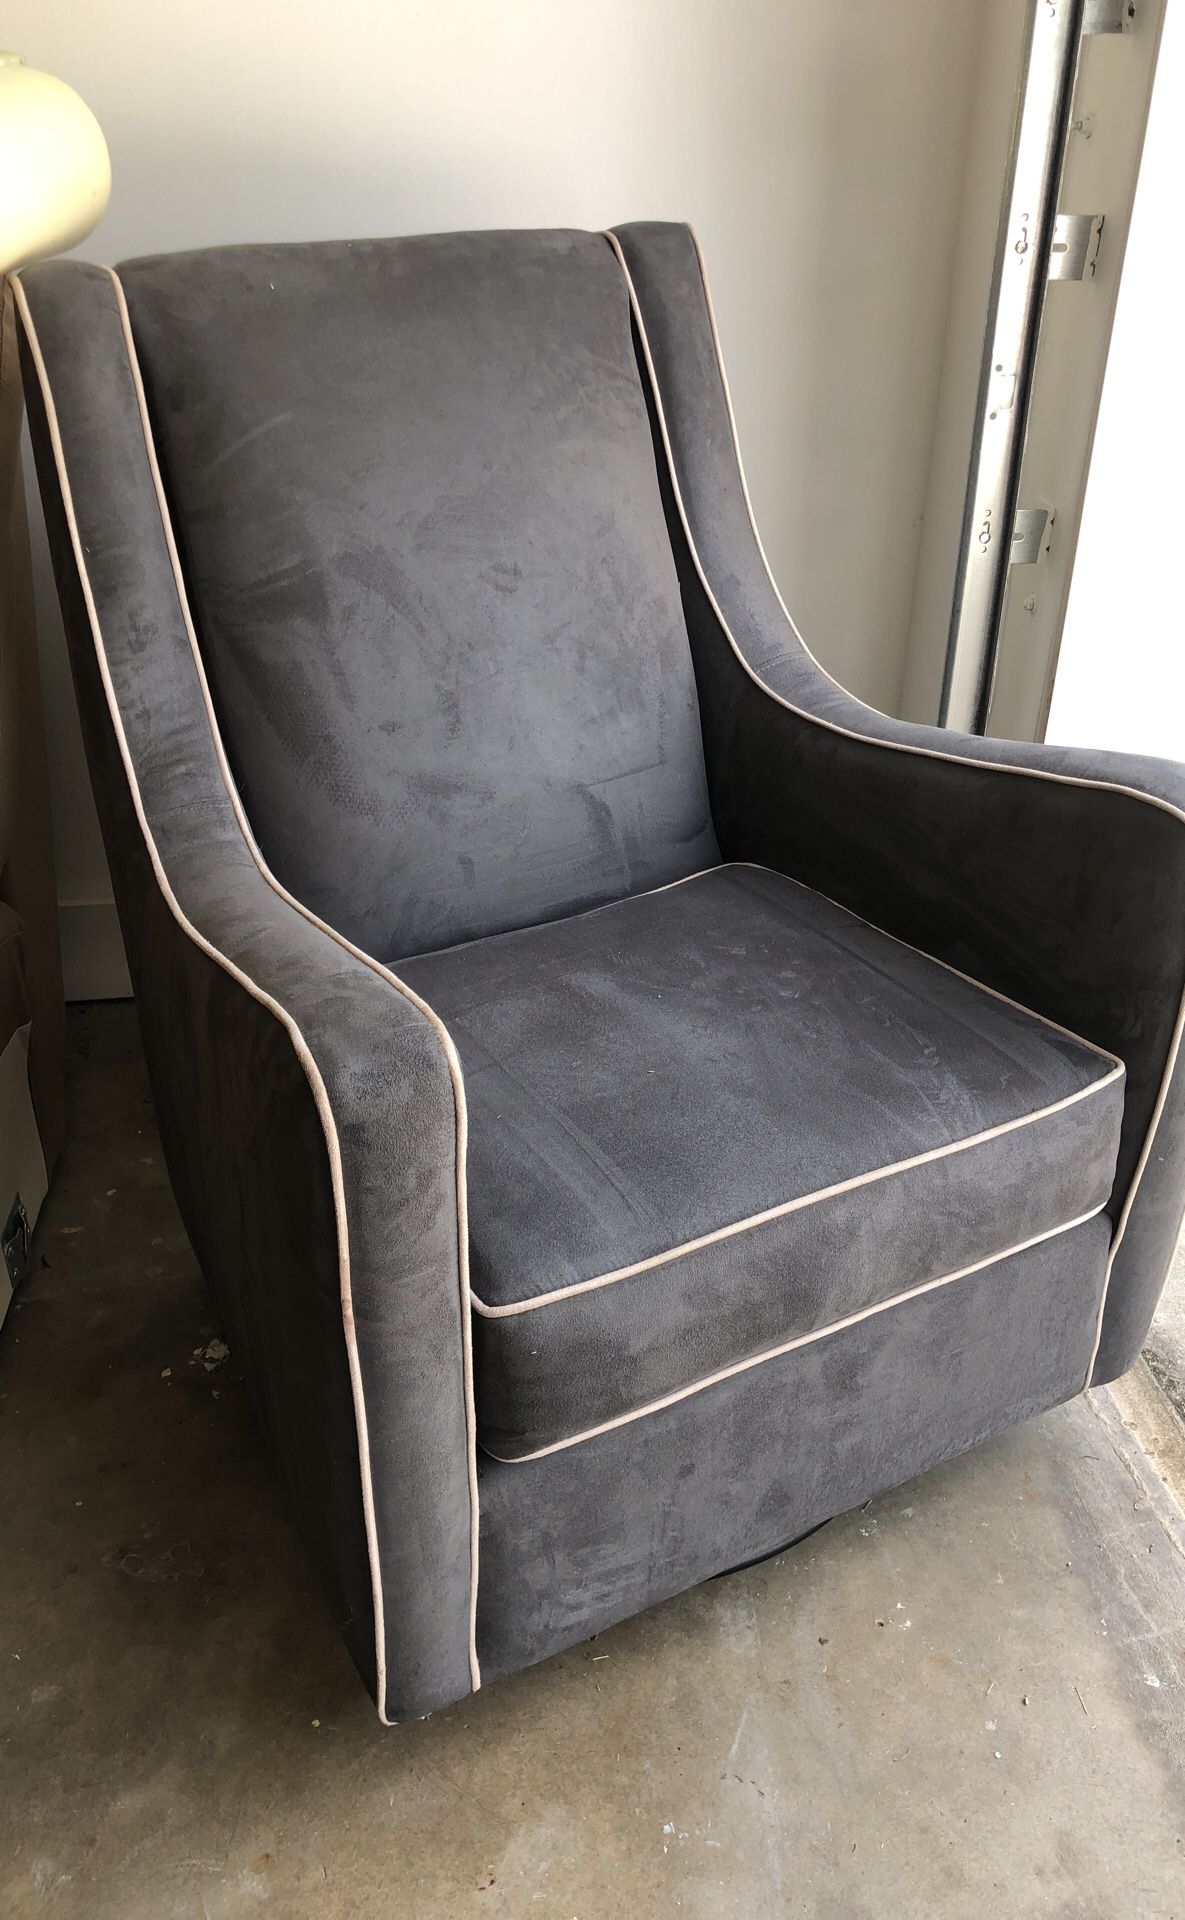 Suede Glider Chair w/ ottoman